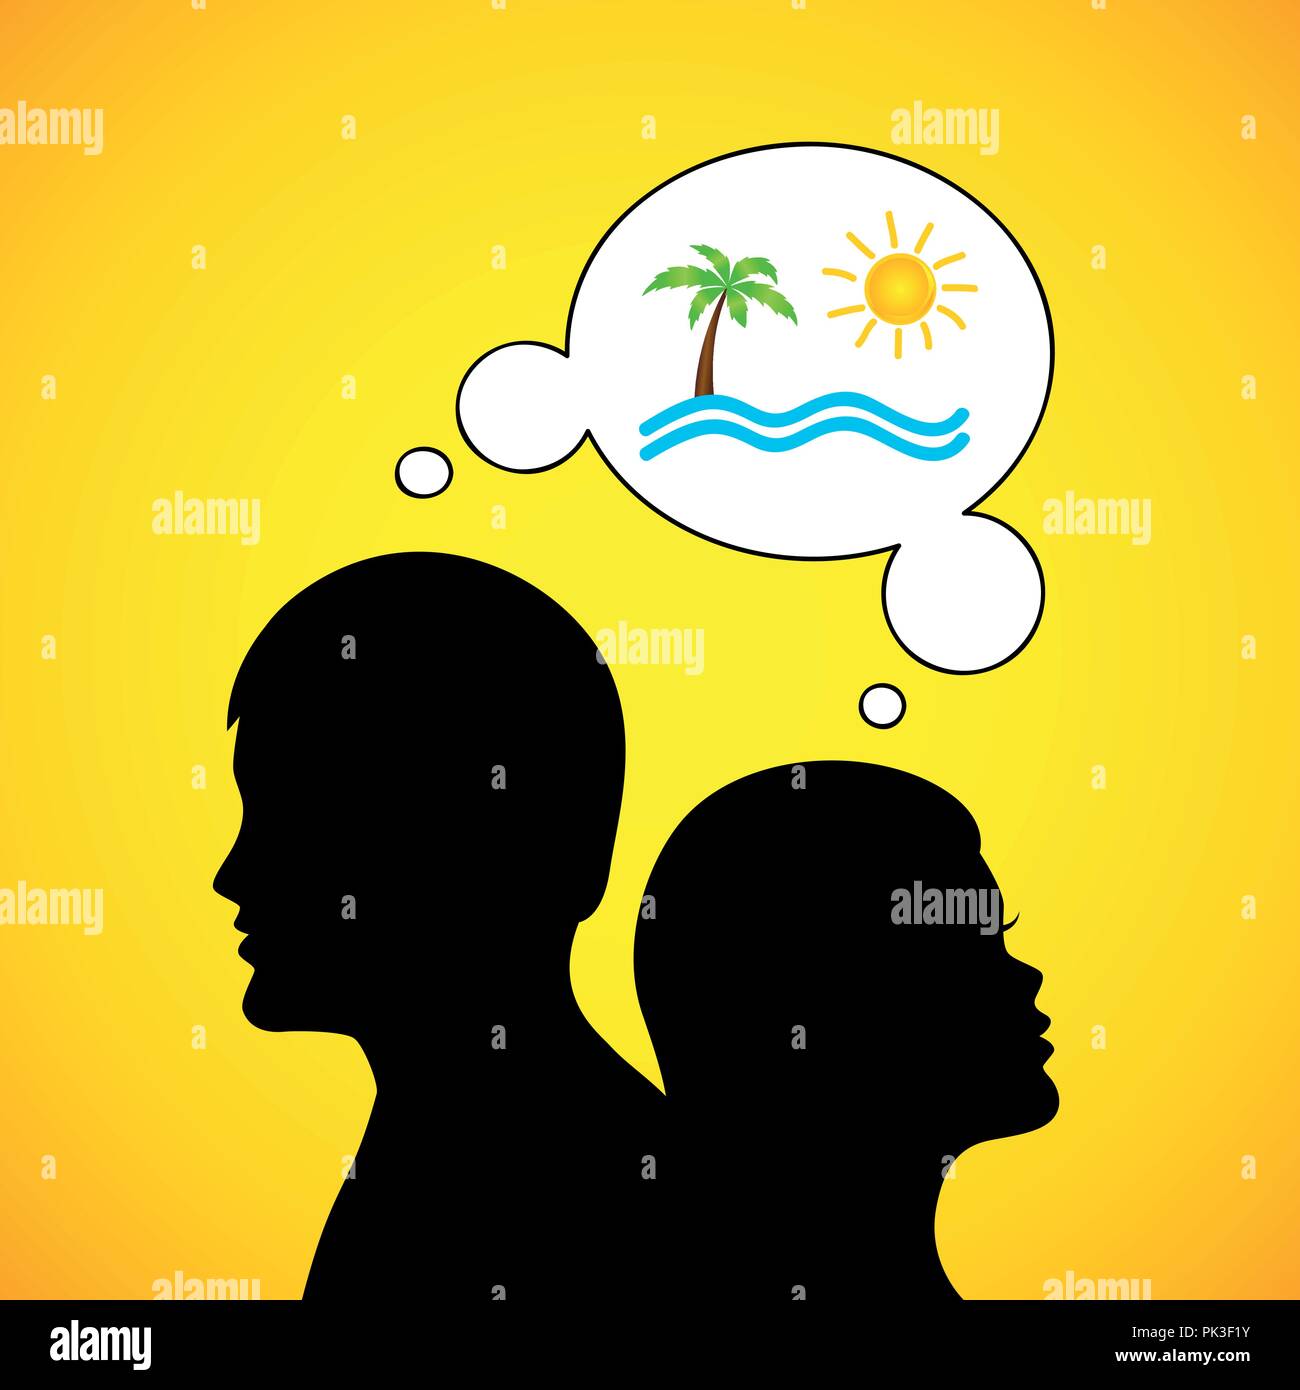 L'homme et la femme d'ossature pensez à des vacances sur la plage illustration vecteur EPS10 Illustration de Vecteur